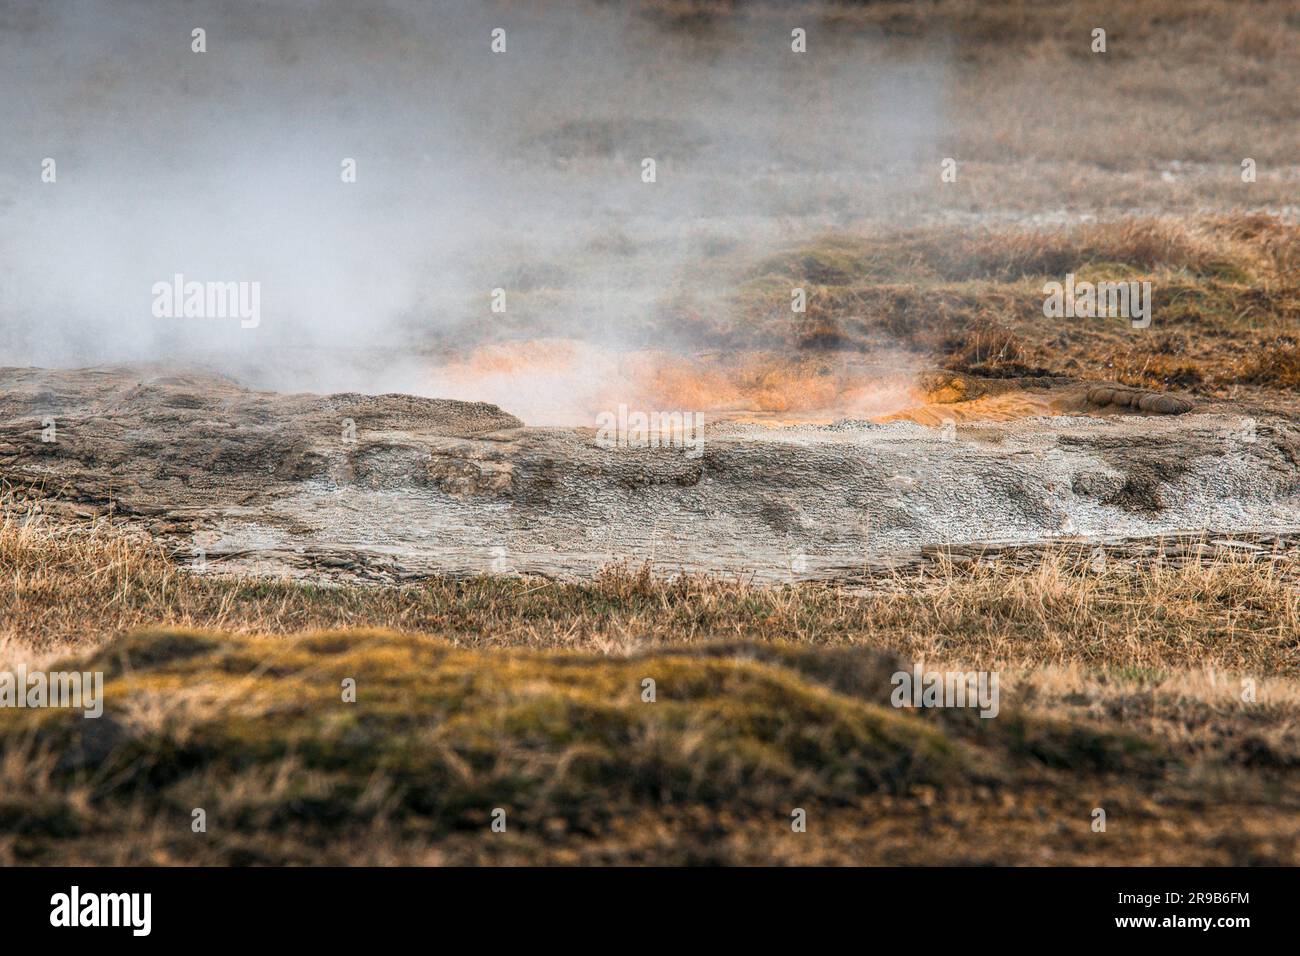 La nature islandaise avec activité géothermique à la surface du sol Banque D'Images